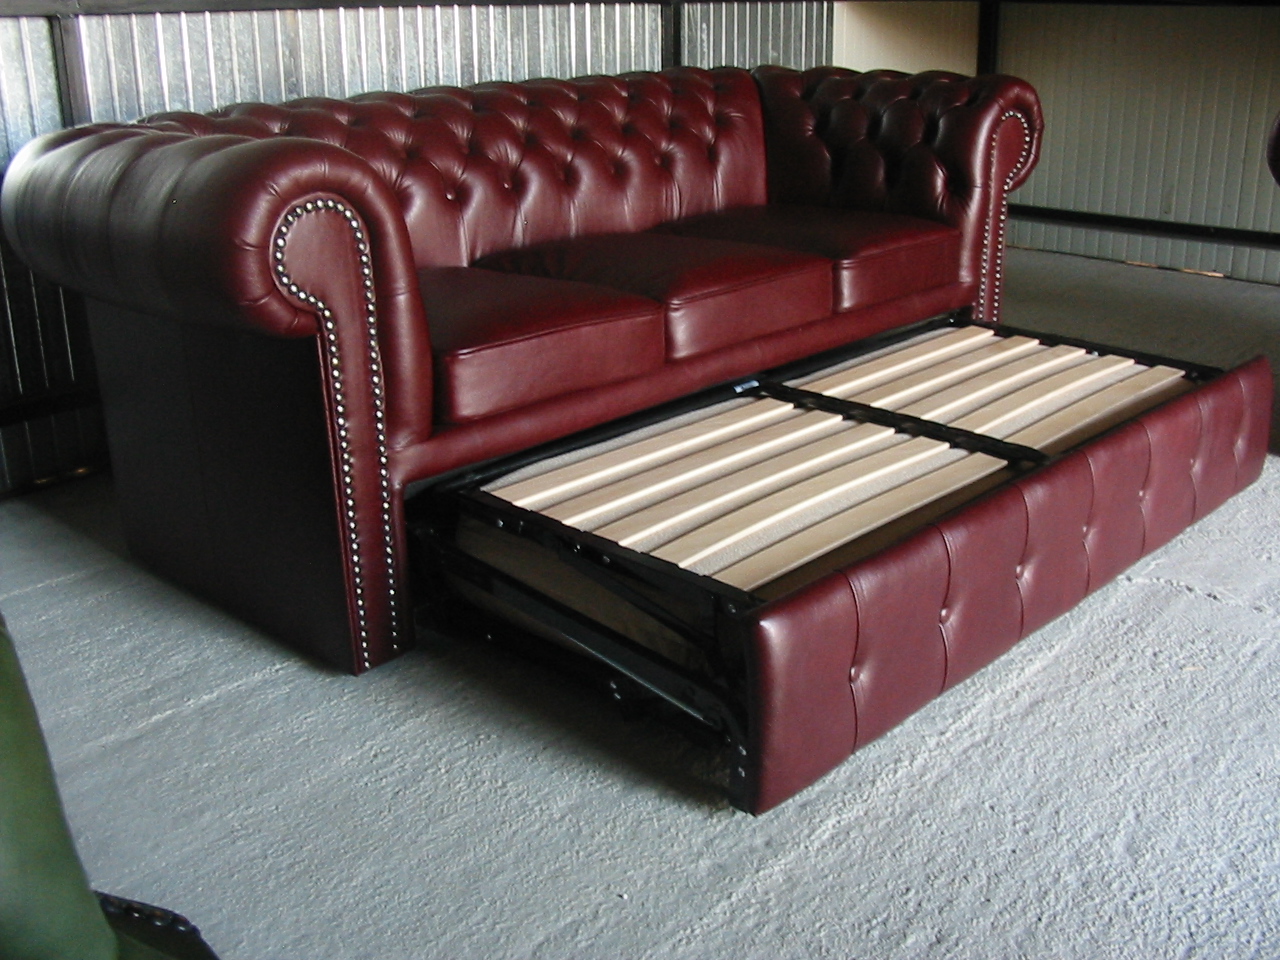 Classic kanapéágy antikbordó A7 Bruttó ár: 622.300 Ft